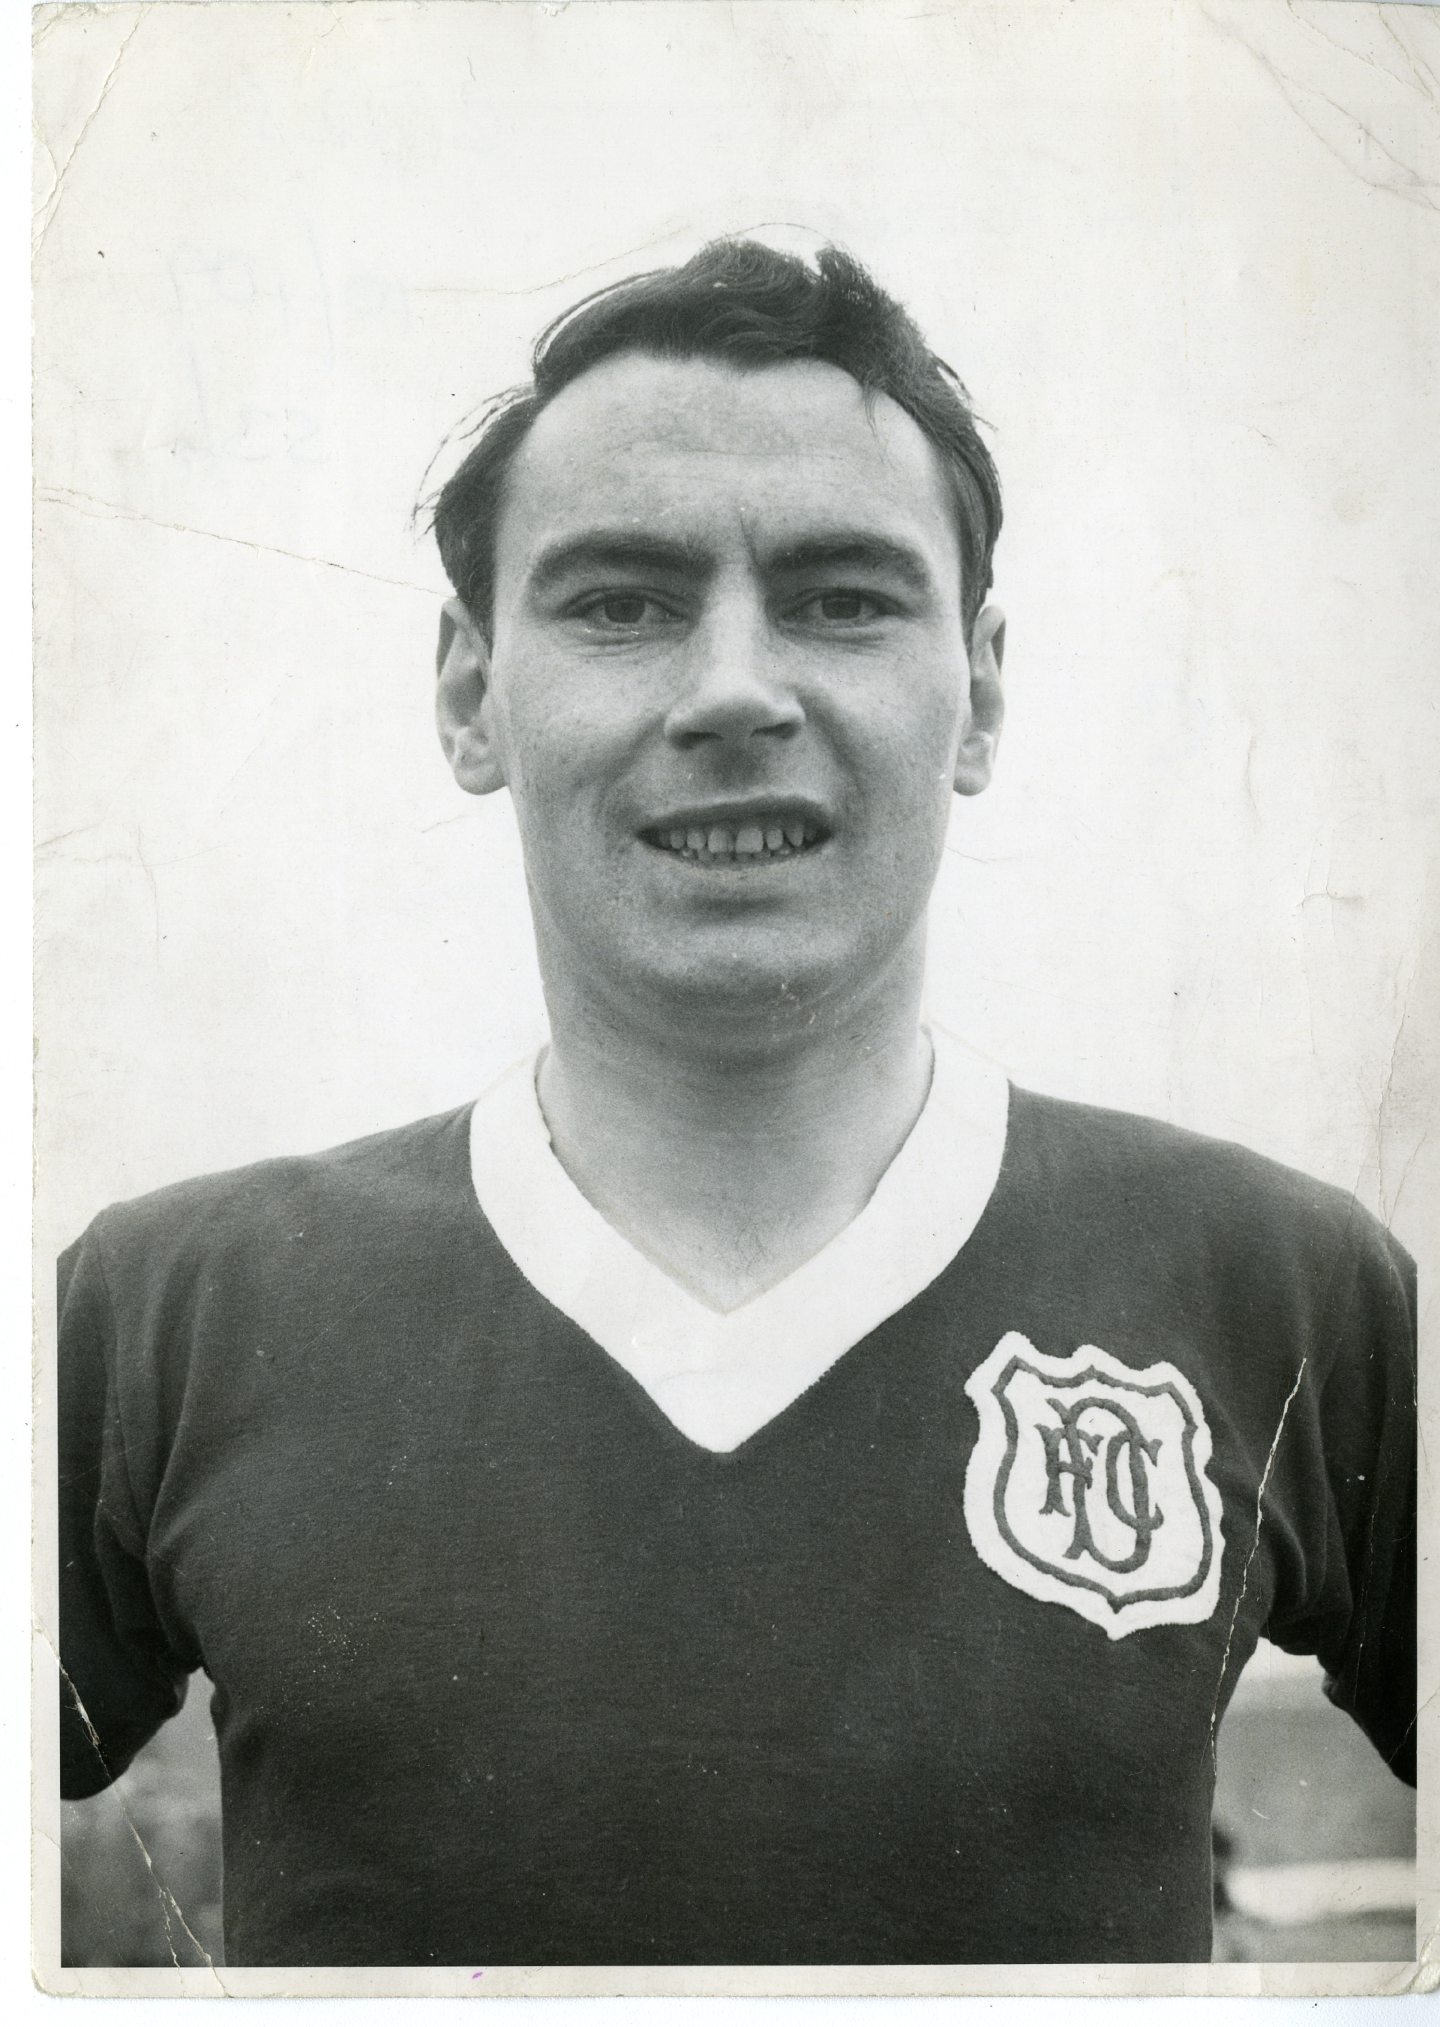 Alan Gilzean was the Dundee goal hero at Ibrox in 1961.